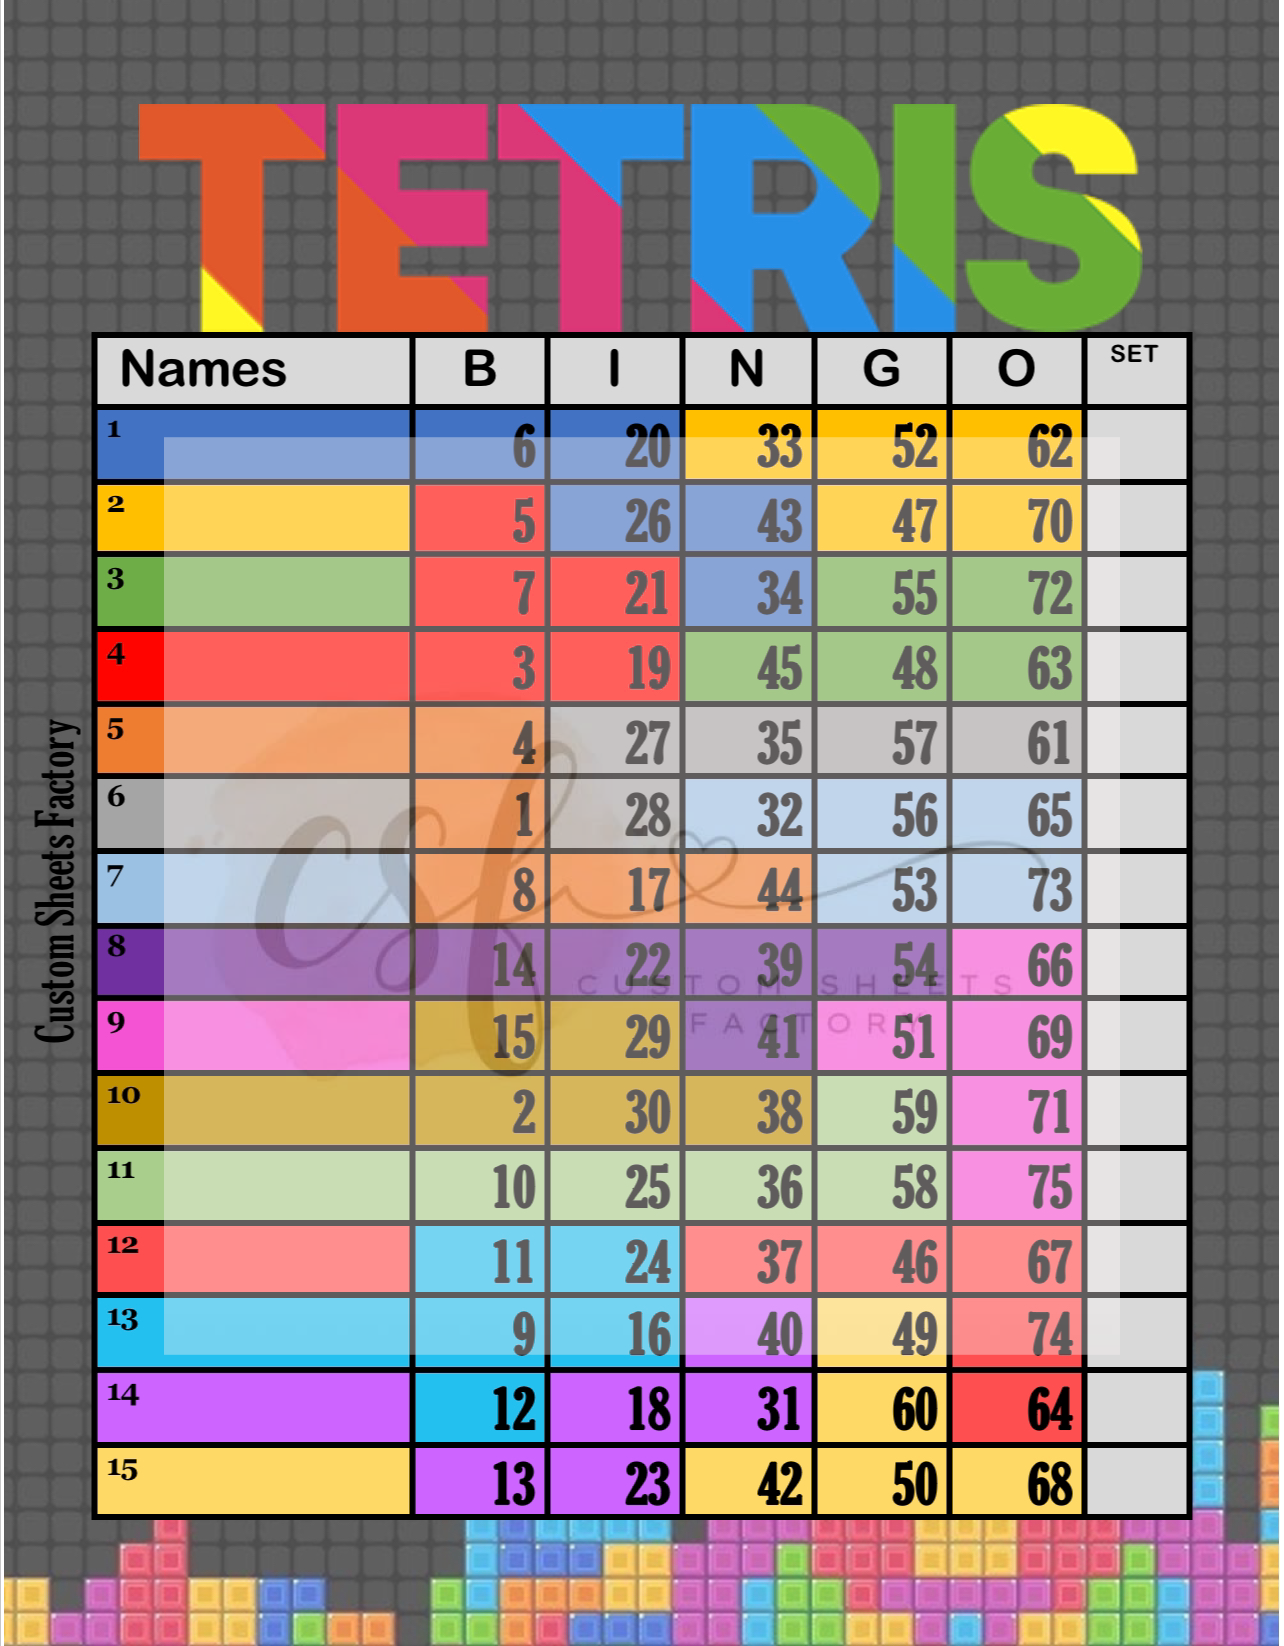 Tetris(Full Background) - 15 Line - 75 Ball